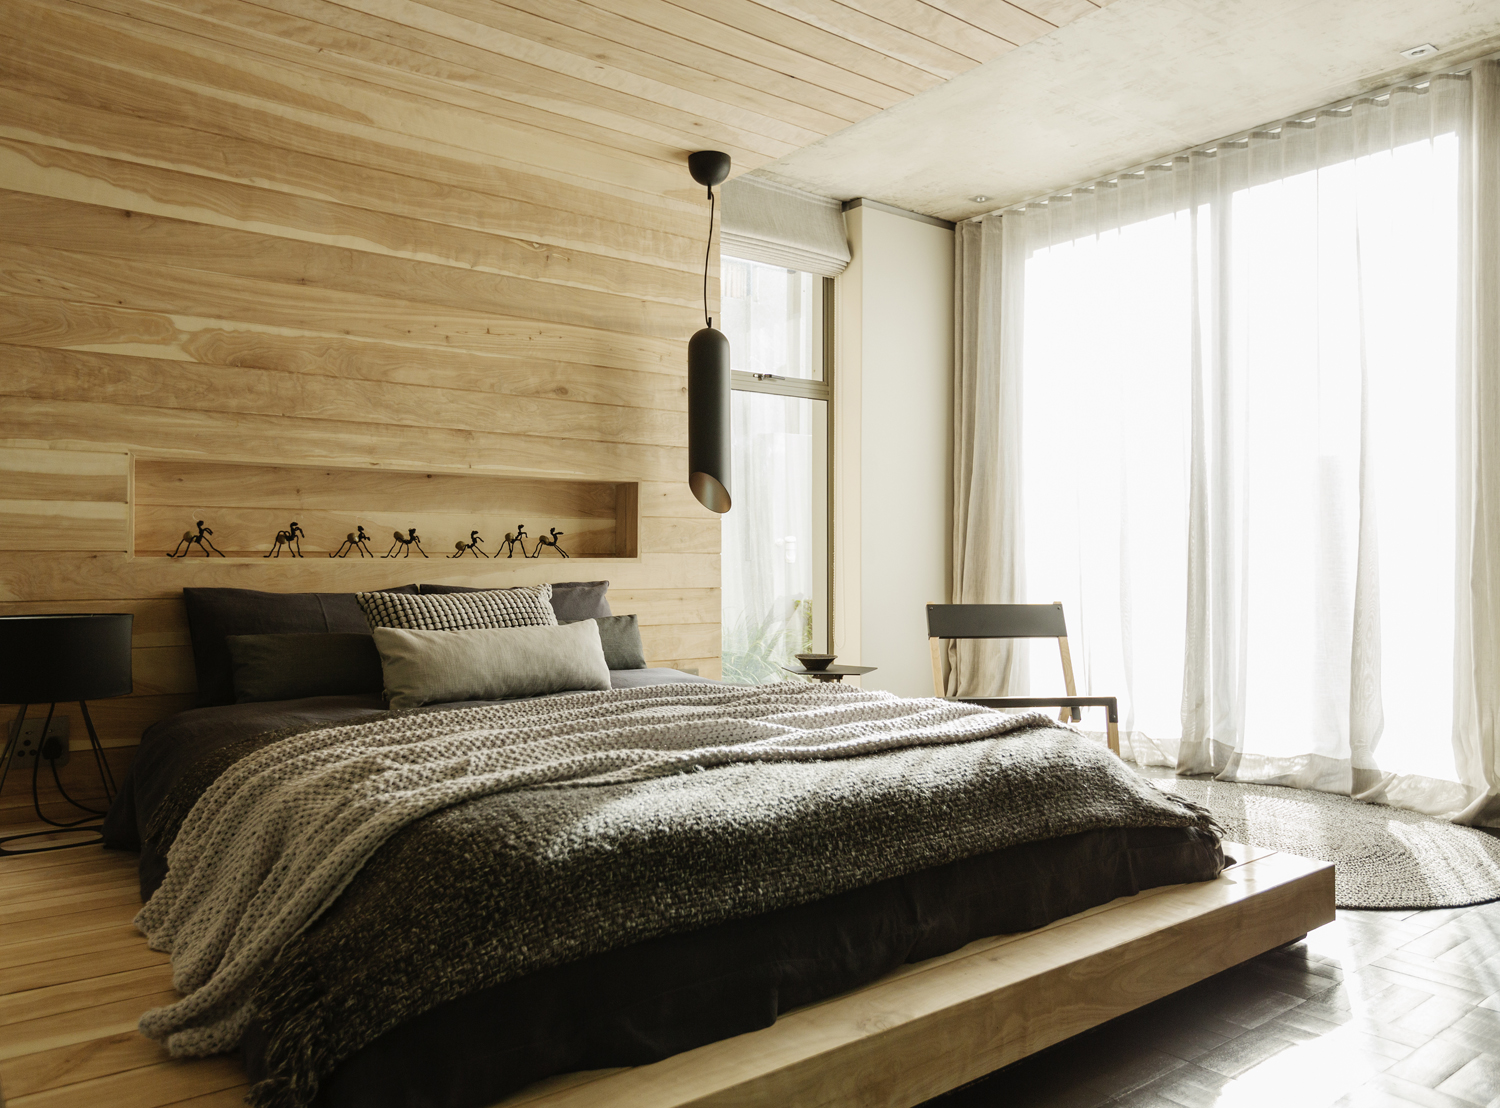 wooden-decoration-in-bedroom